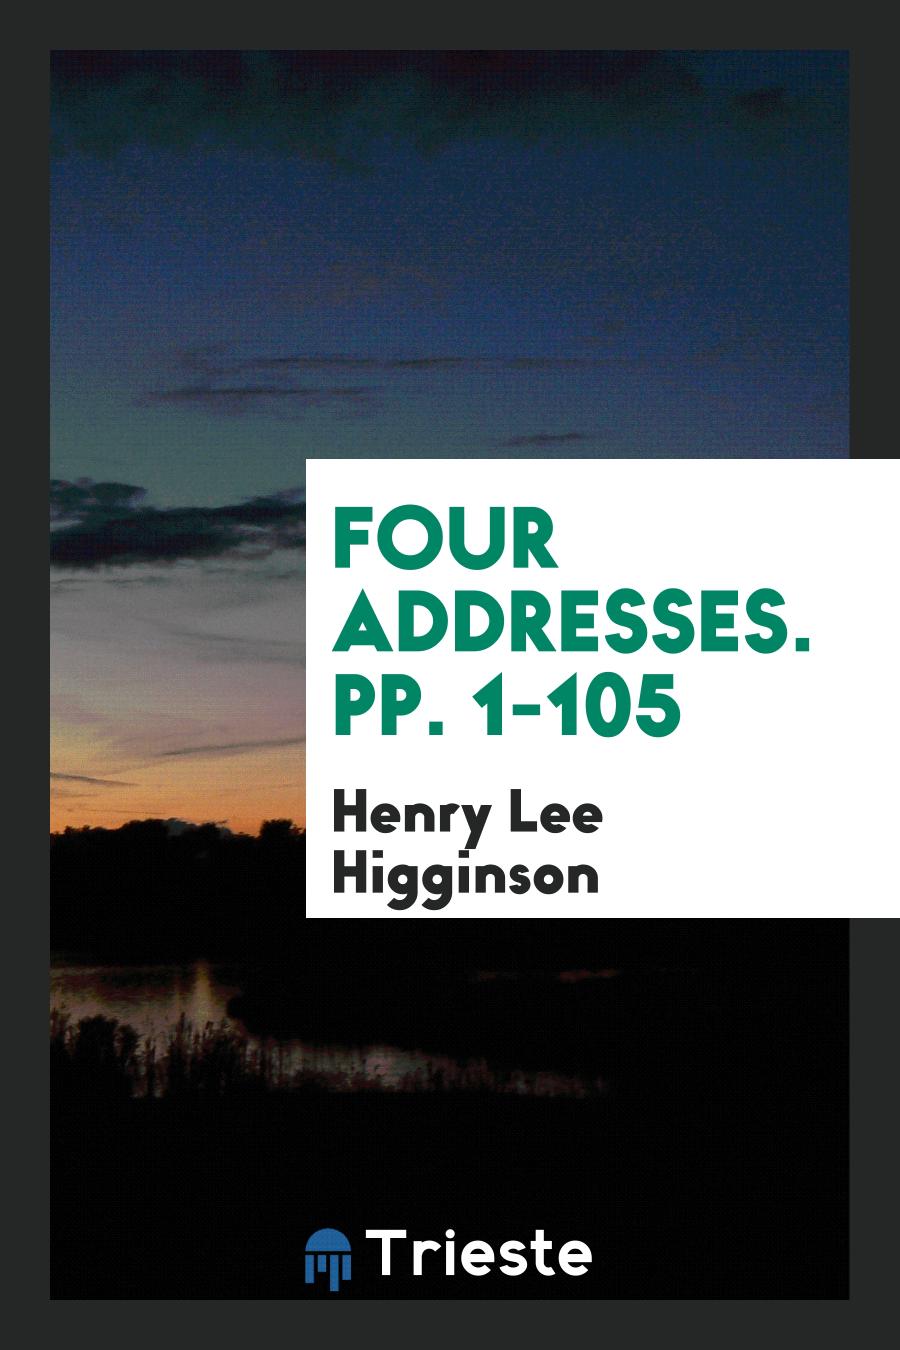 Four Addresses. pp. 1-105